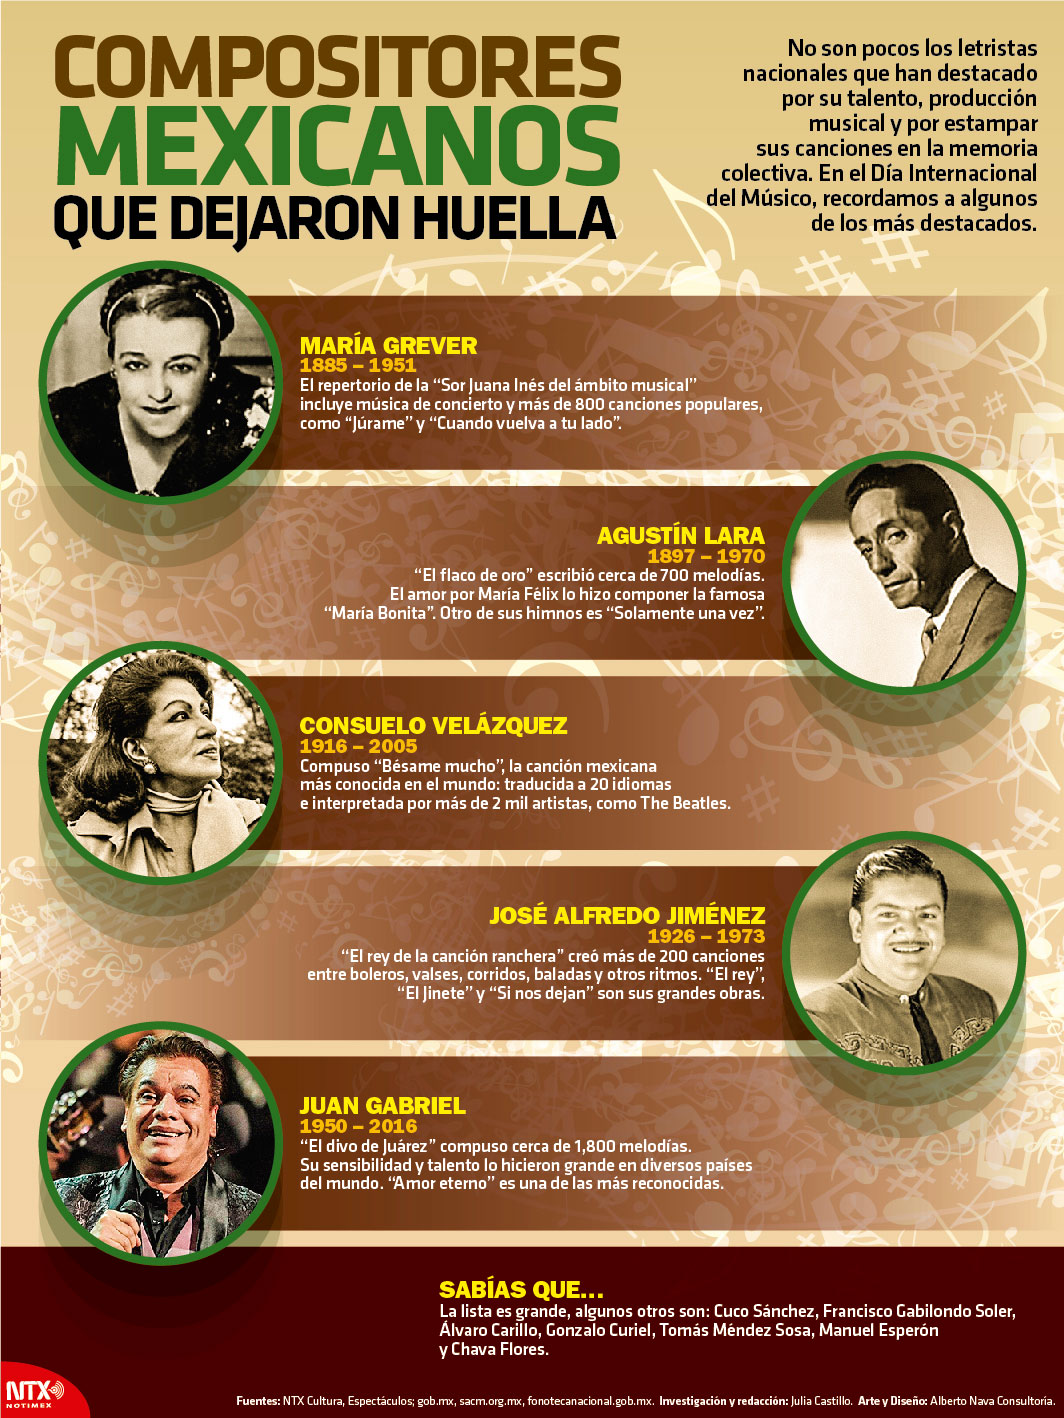 Compositores mexicanos que dejaron huella